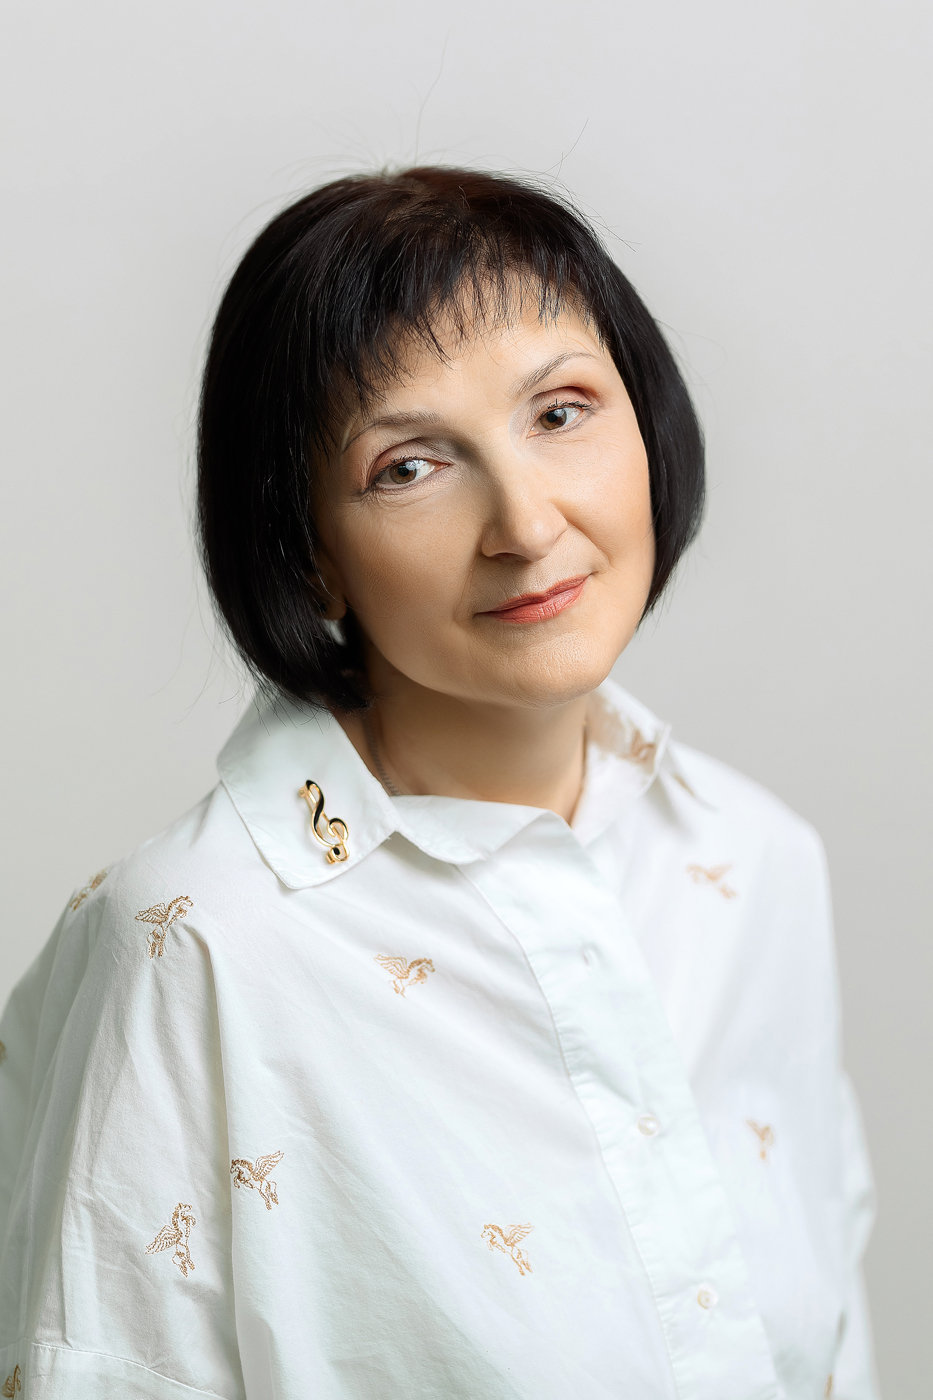 ПЕТРИКОВА Ирина Петровна (29 мая 1964 года).